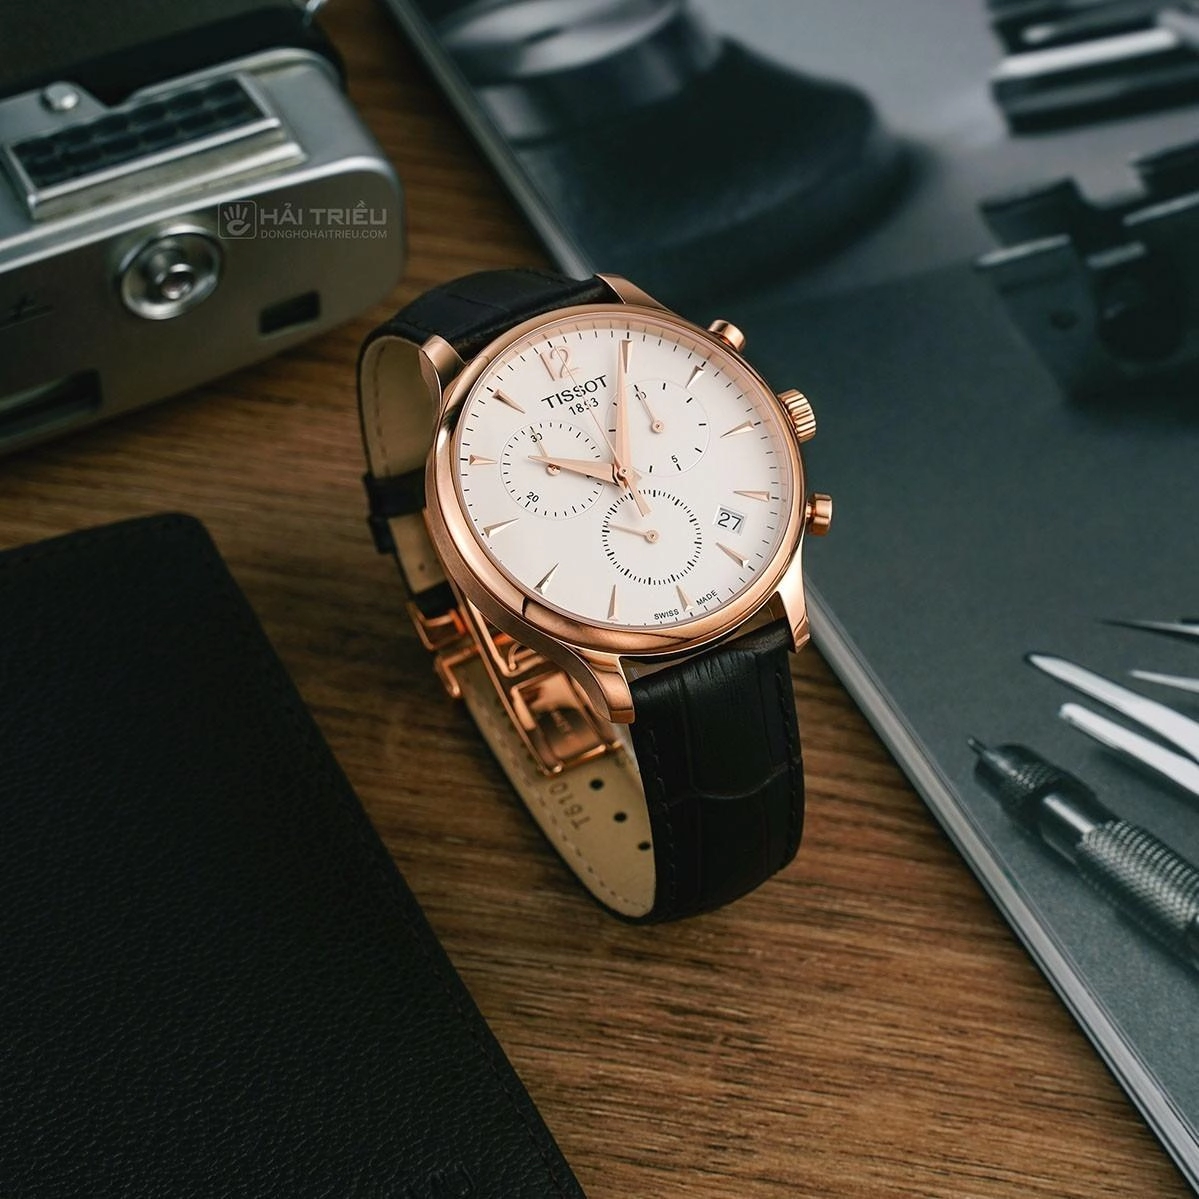 Đồng hồ chronograph là gì cách sử dụng chuẩn và tư vấn mua